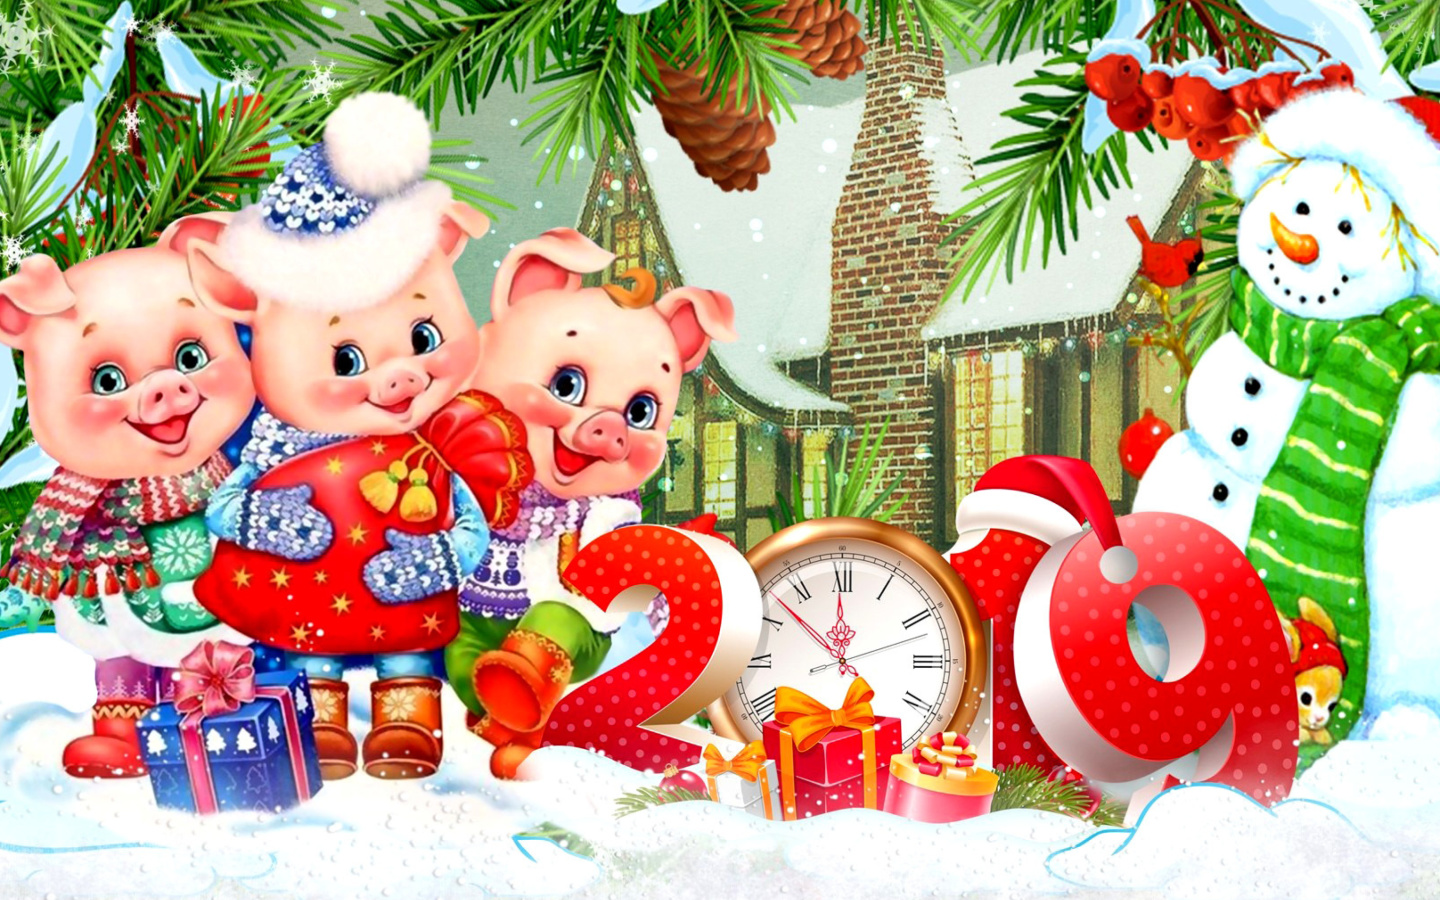 2019 Pig New Year Chinese Horoscope wallpaper 1440x900